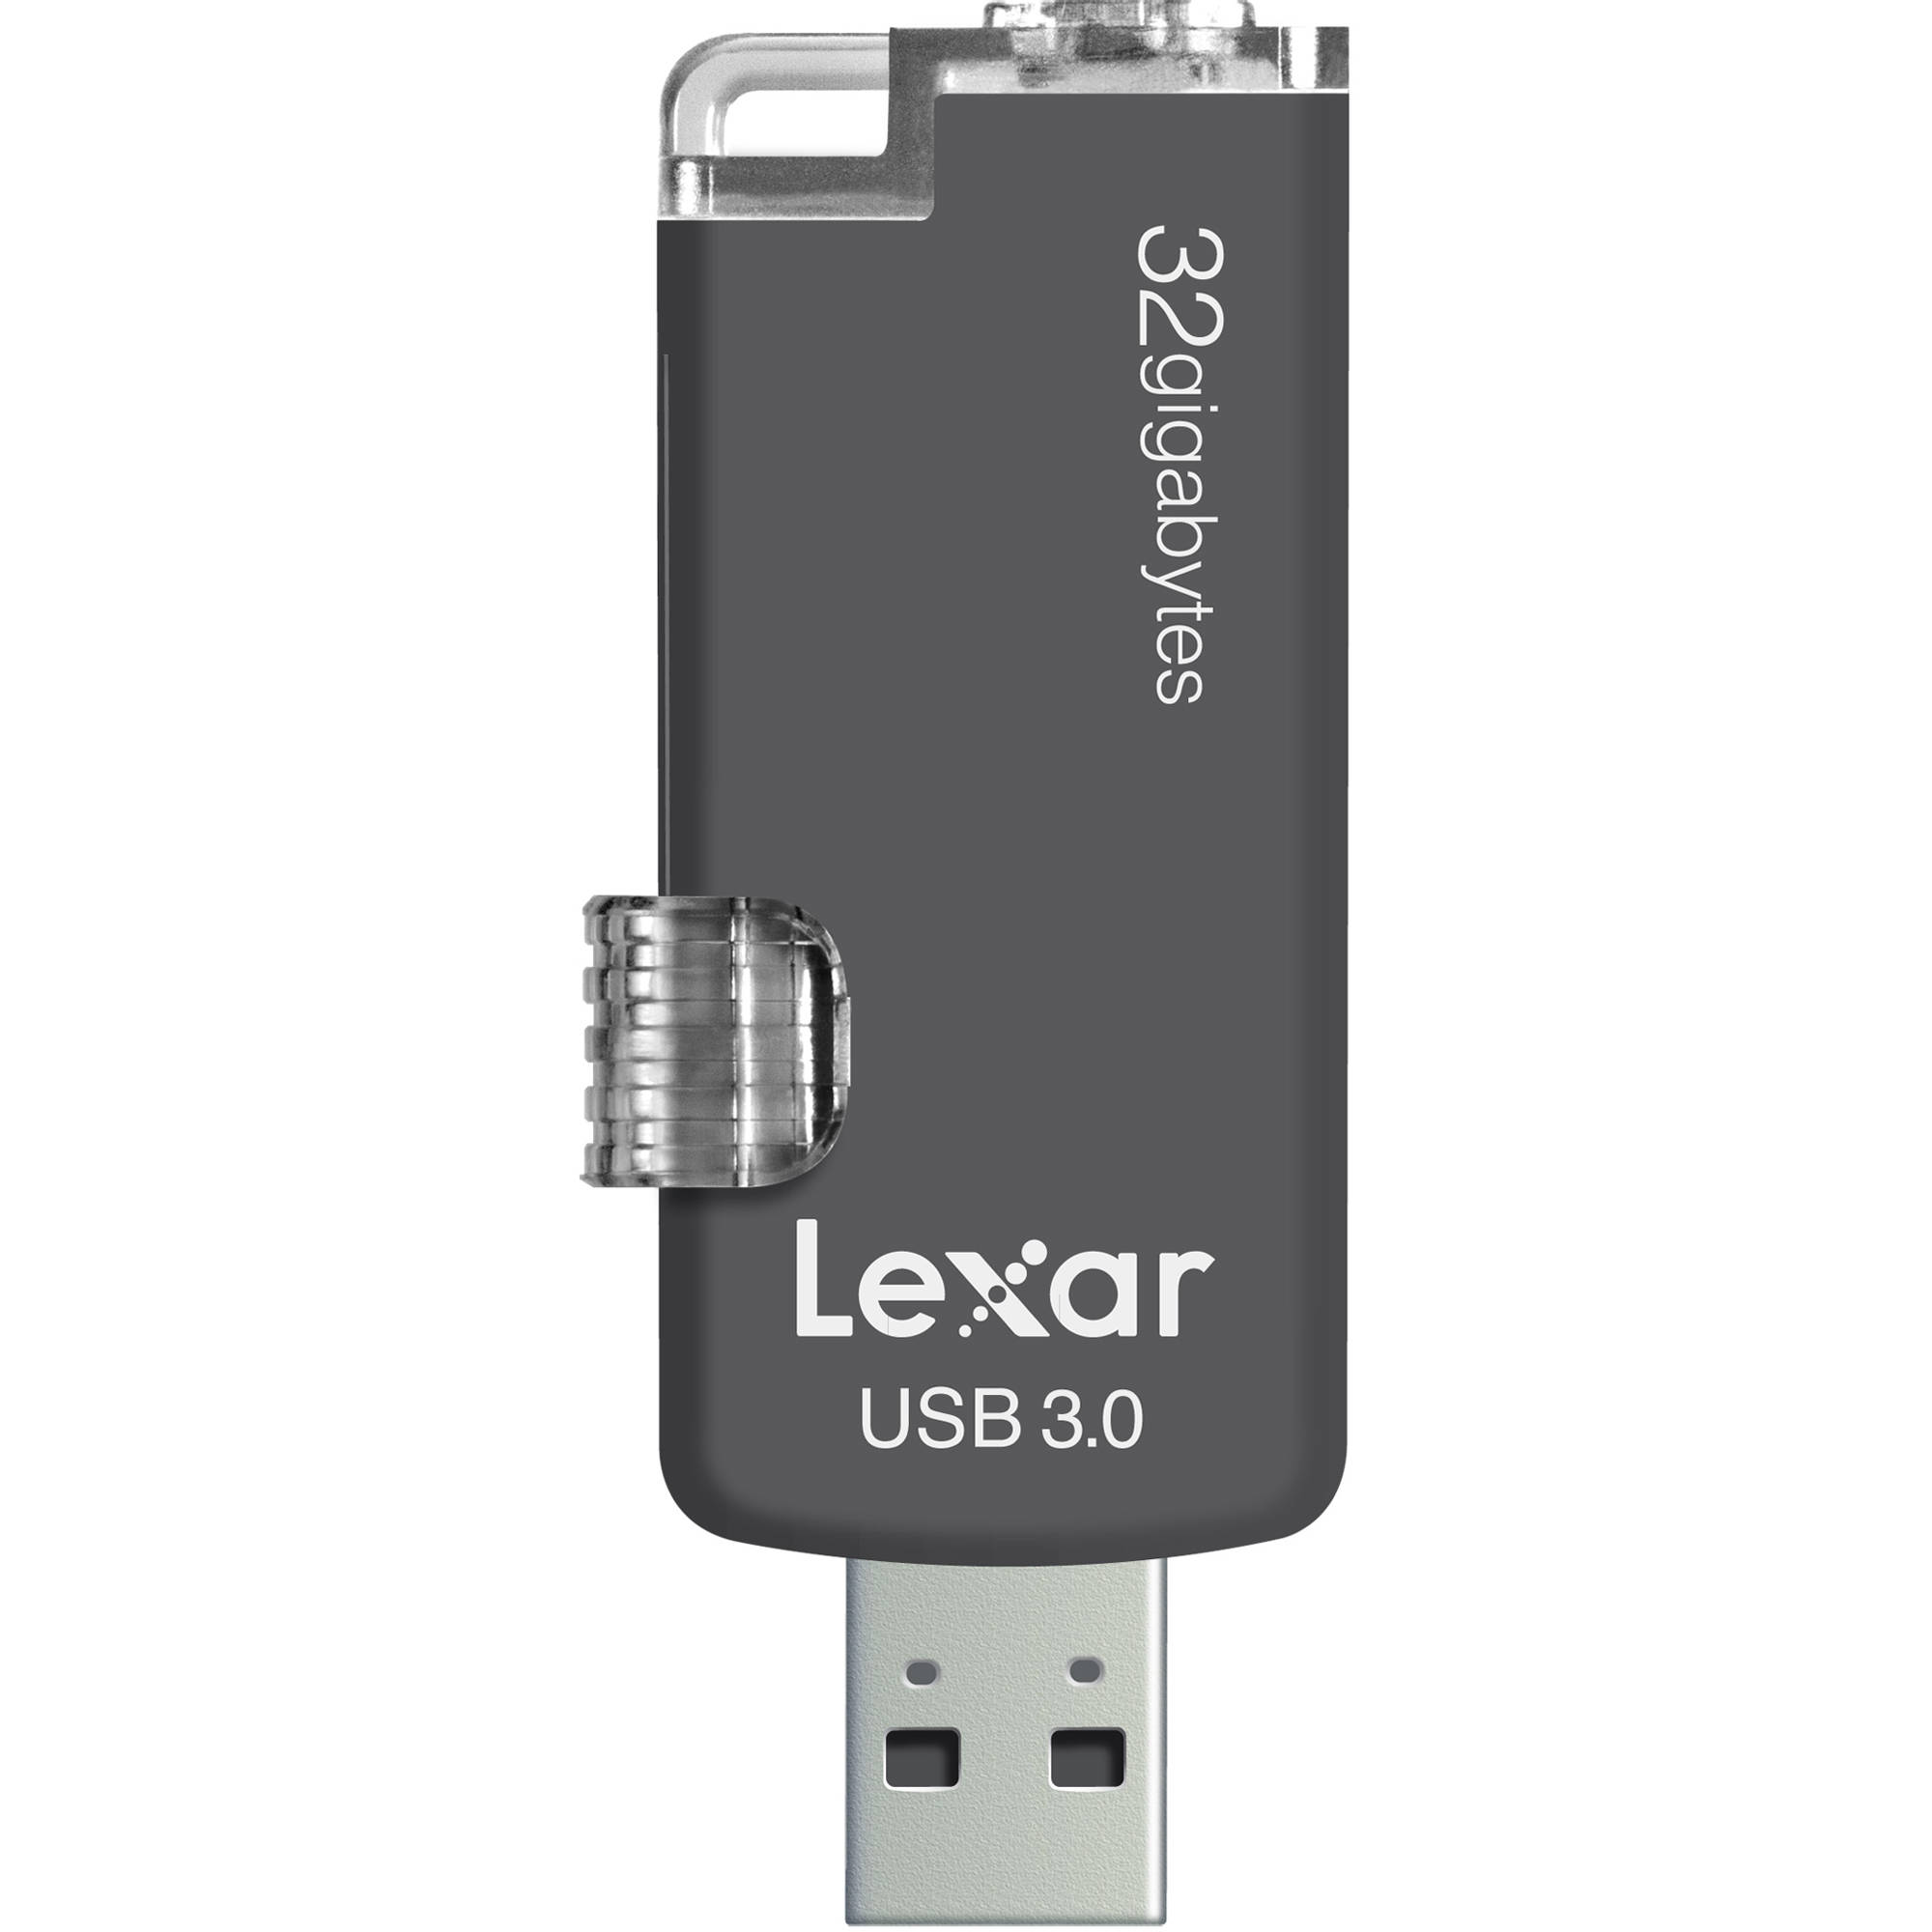 lexar flash drives